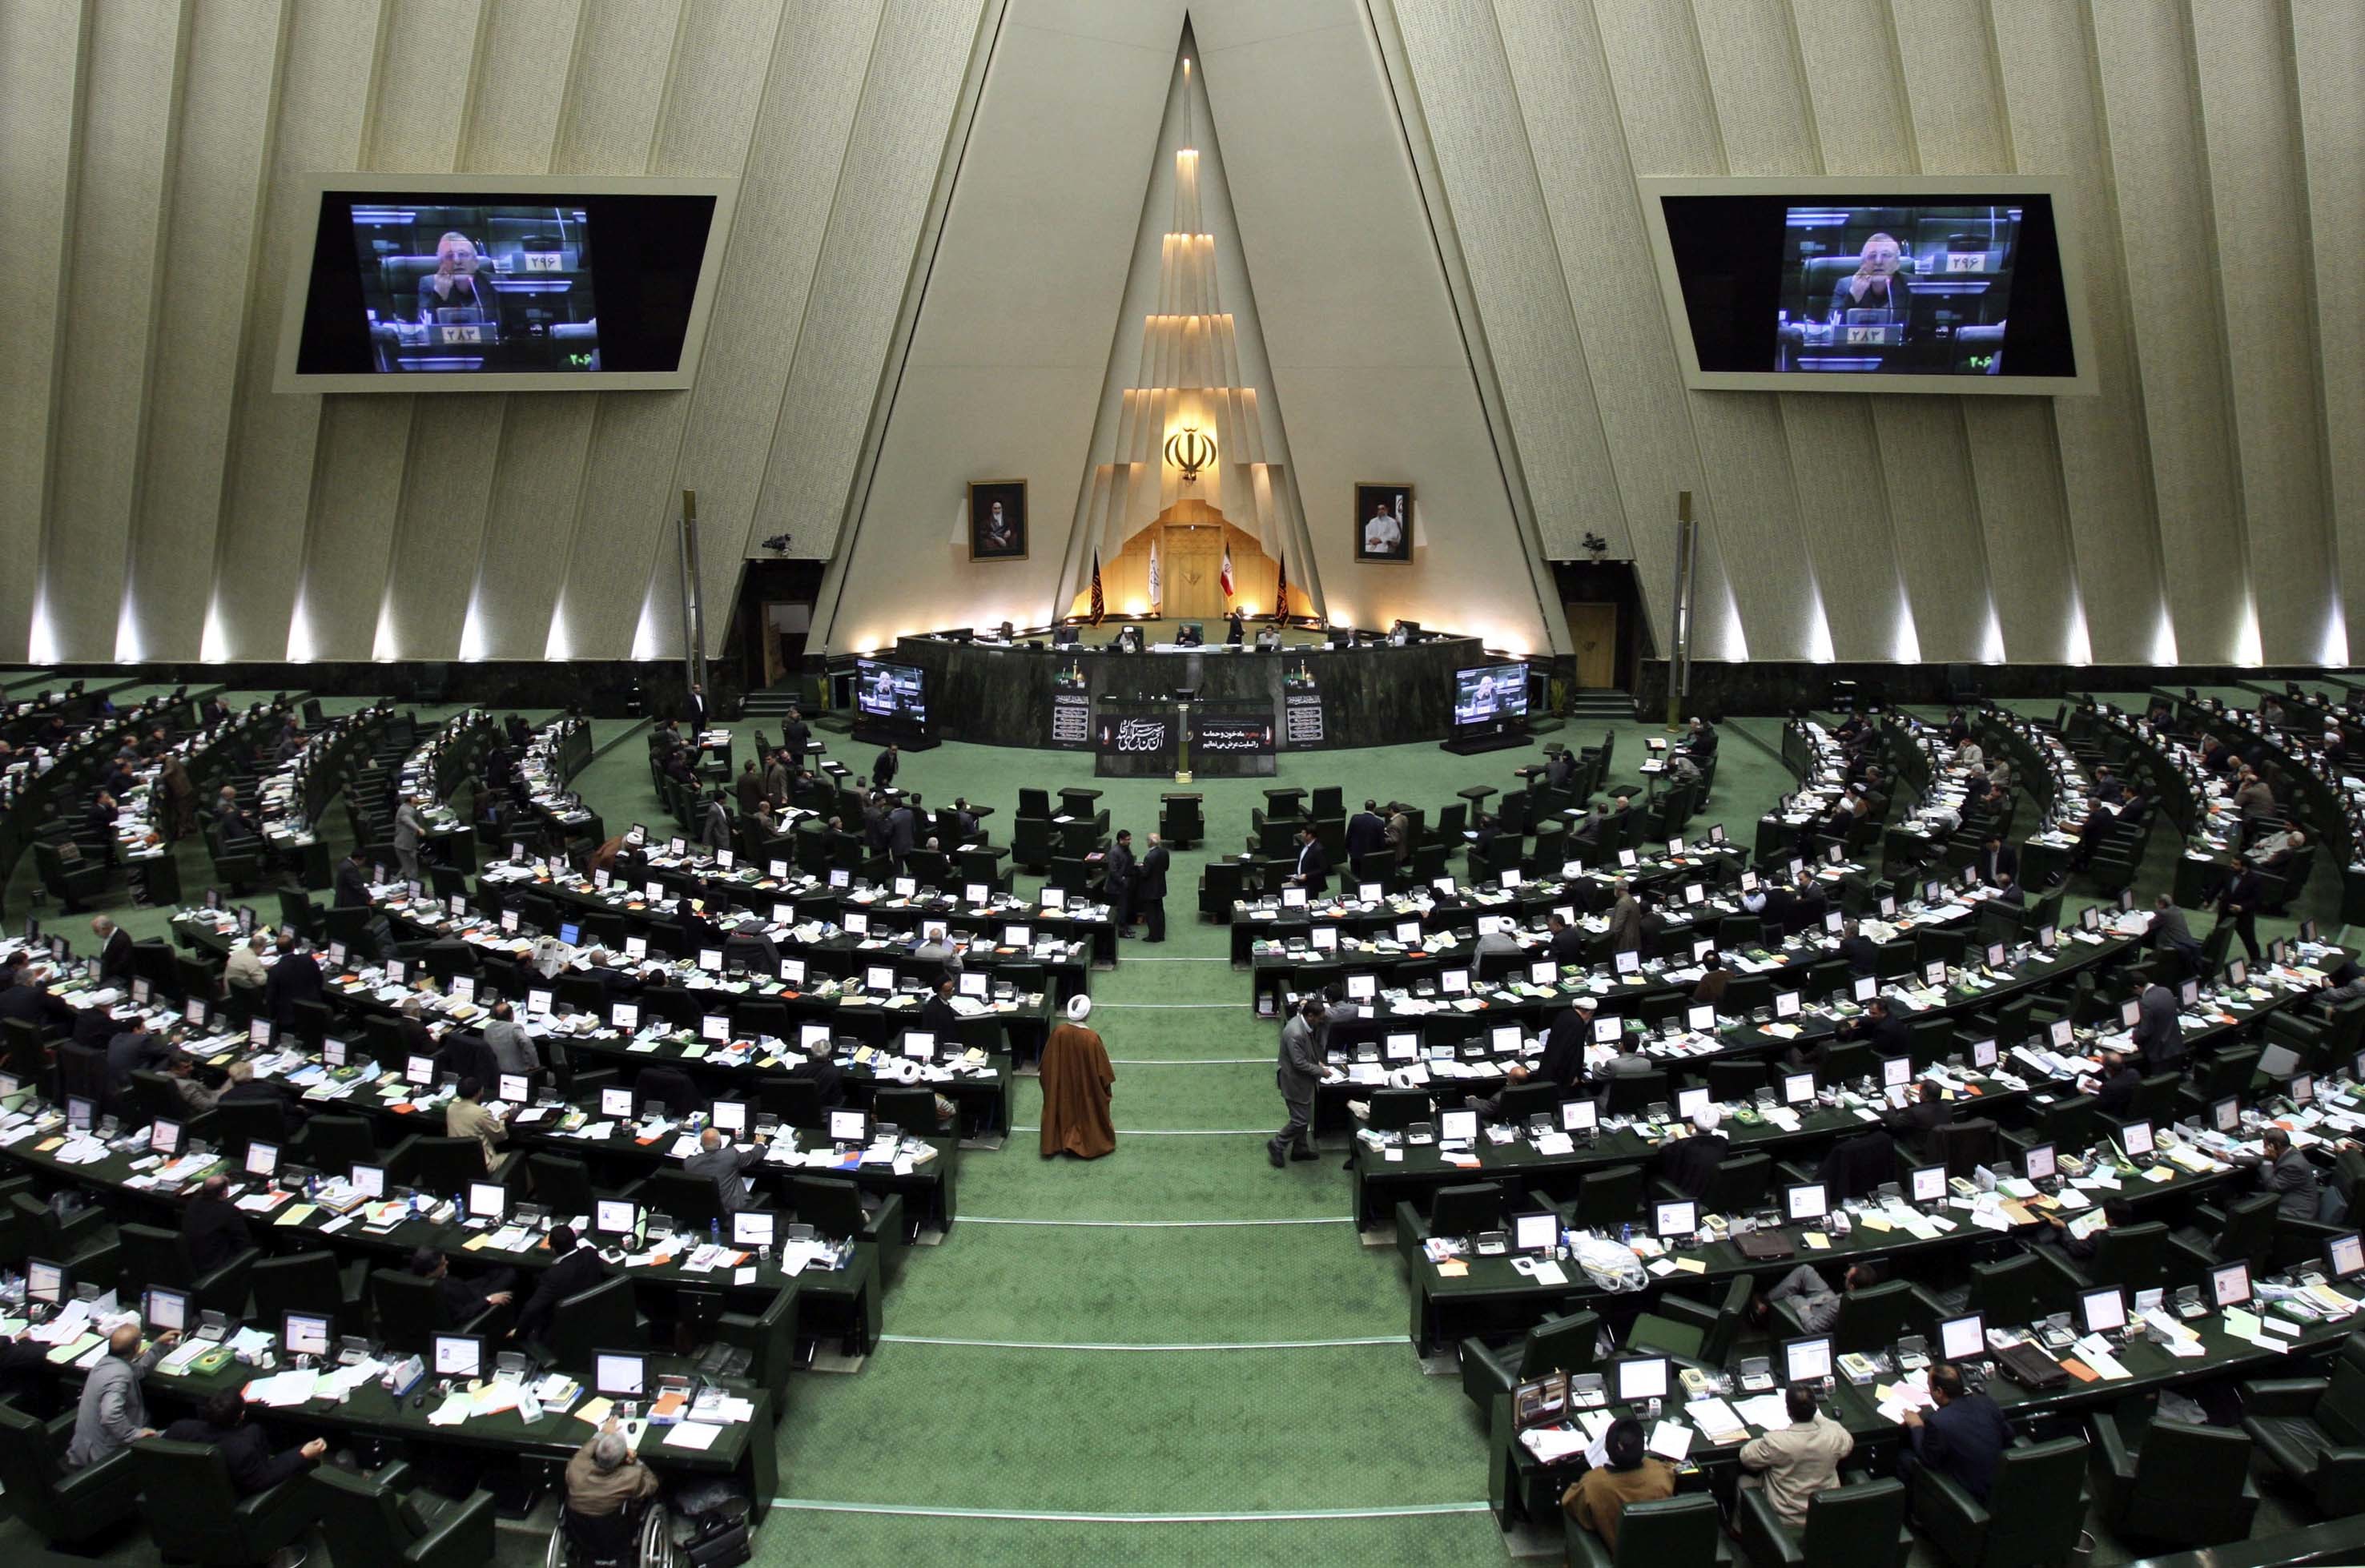 ΦΩΤΟ AΡΧΕΙΟΥ EUROKINISSI - To Κοινοβούλιο του Ιράν